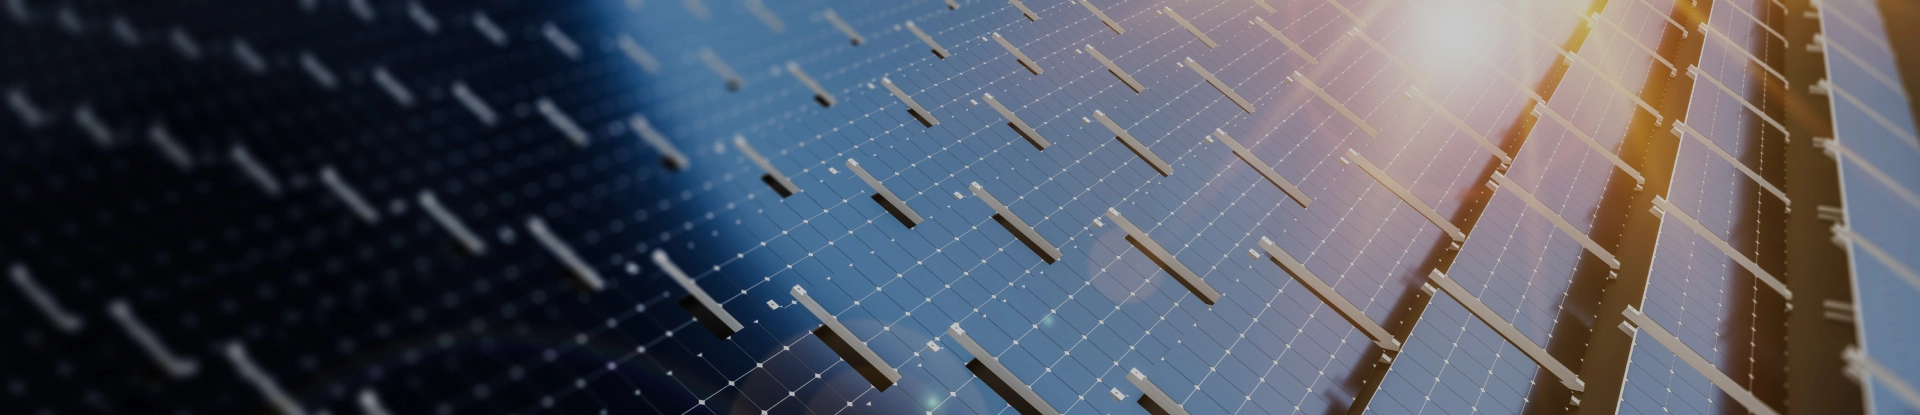 Pannelli fotovoltaici per energia sostenibile